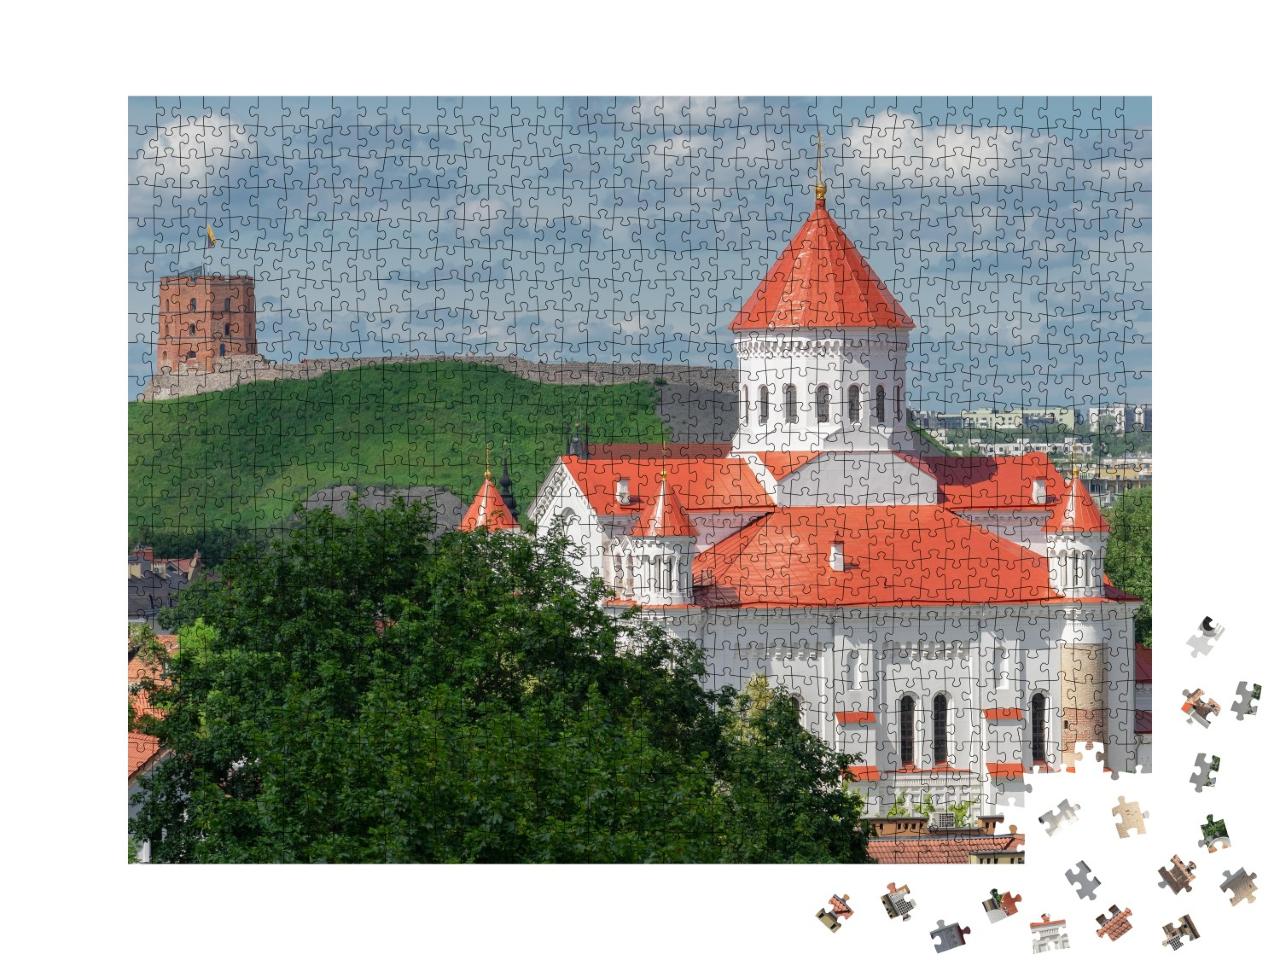 Puzzle de 1000 pièces « Vieille ville de Vilnius avec la cathédrale de Theotokos »